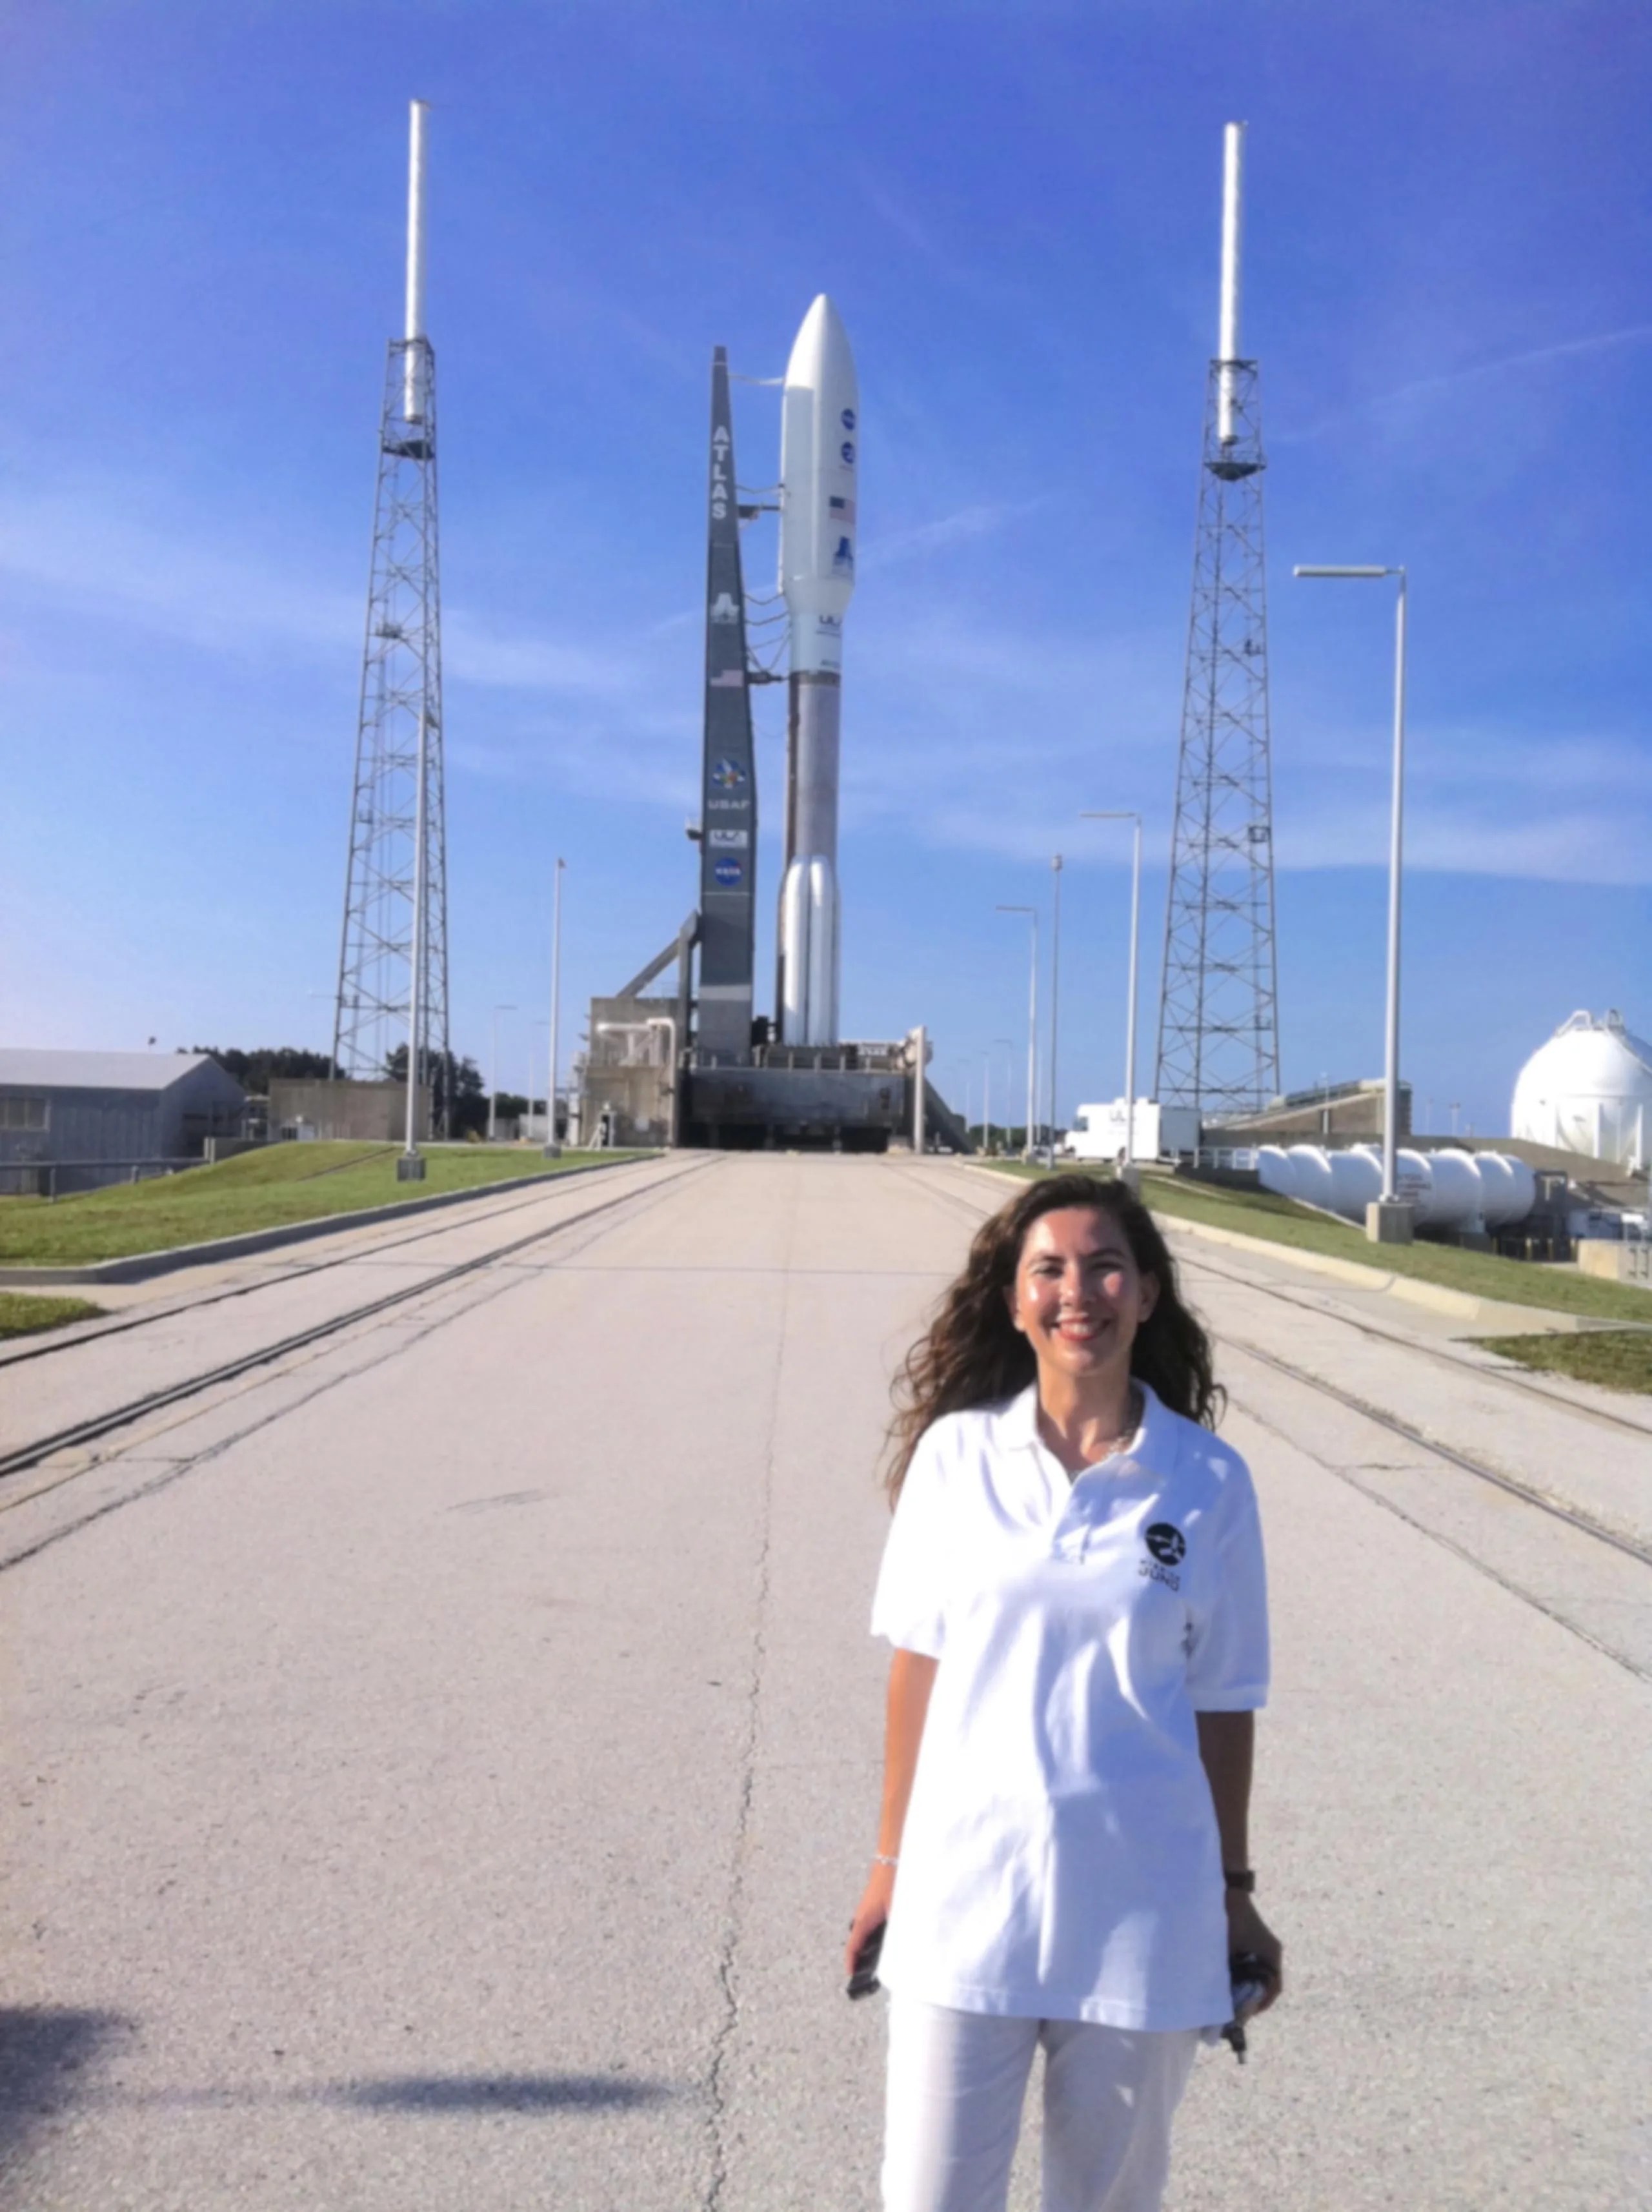 La Dra. Michela Muñoz Fernández, una mujer de pelo largo y castaño, viste de blanco. Está parada mirando a la cámara y sonriendo, abajo a la derecha de la imagen. Al fondo, se ve un cohete blanco antes de despegar hacia el espacio con la nave espacial Juno. El cielo azul está mayormente despejado.